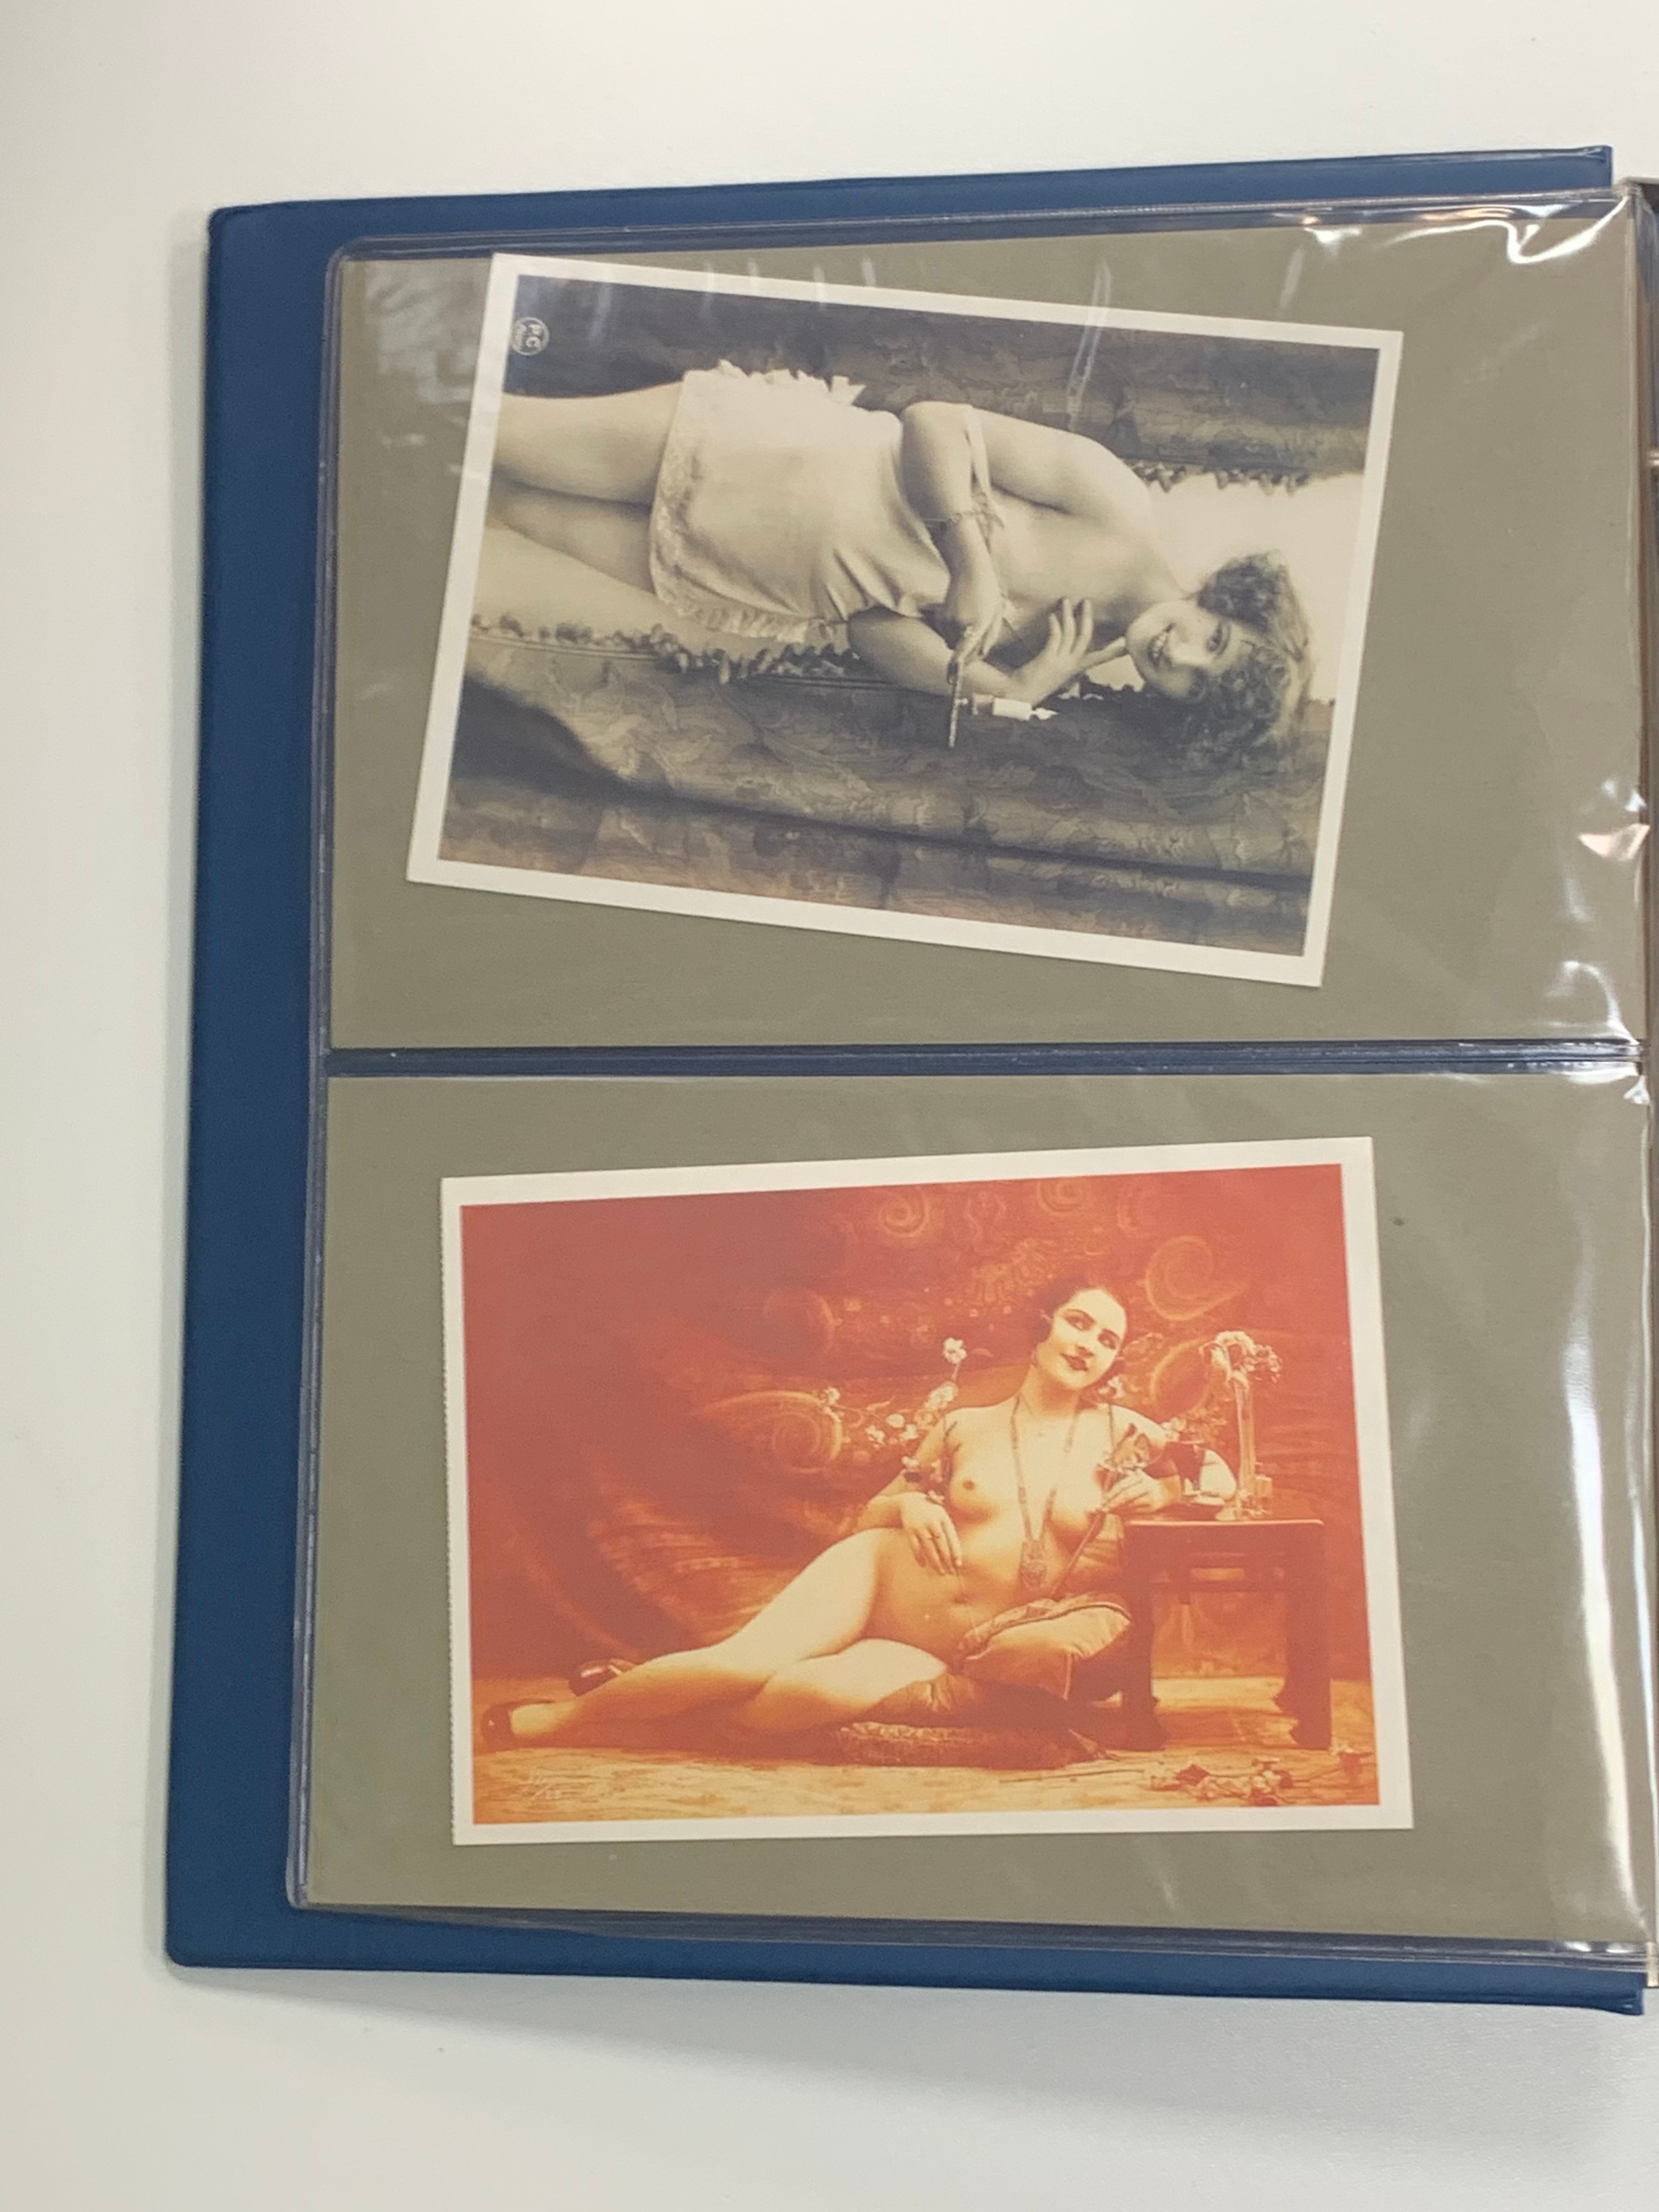 Vintage glamour, range of vintage glamour / erotic postcards in binder. Total cards 36. - Image 2 of 18